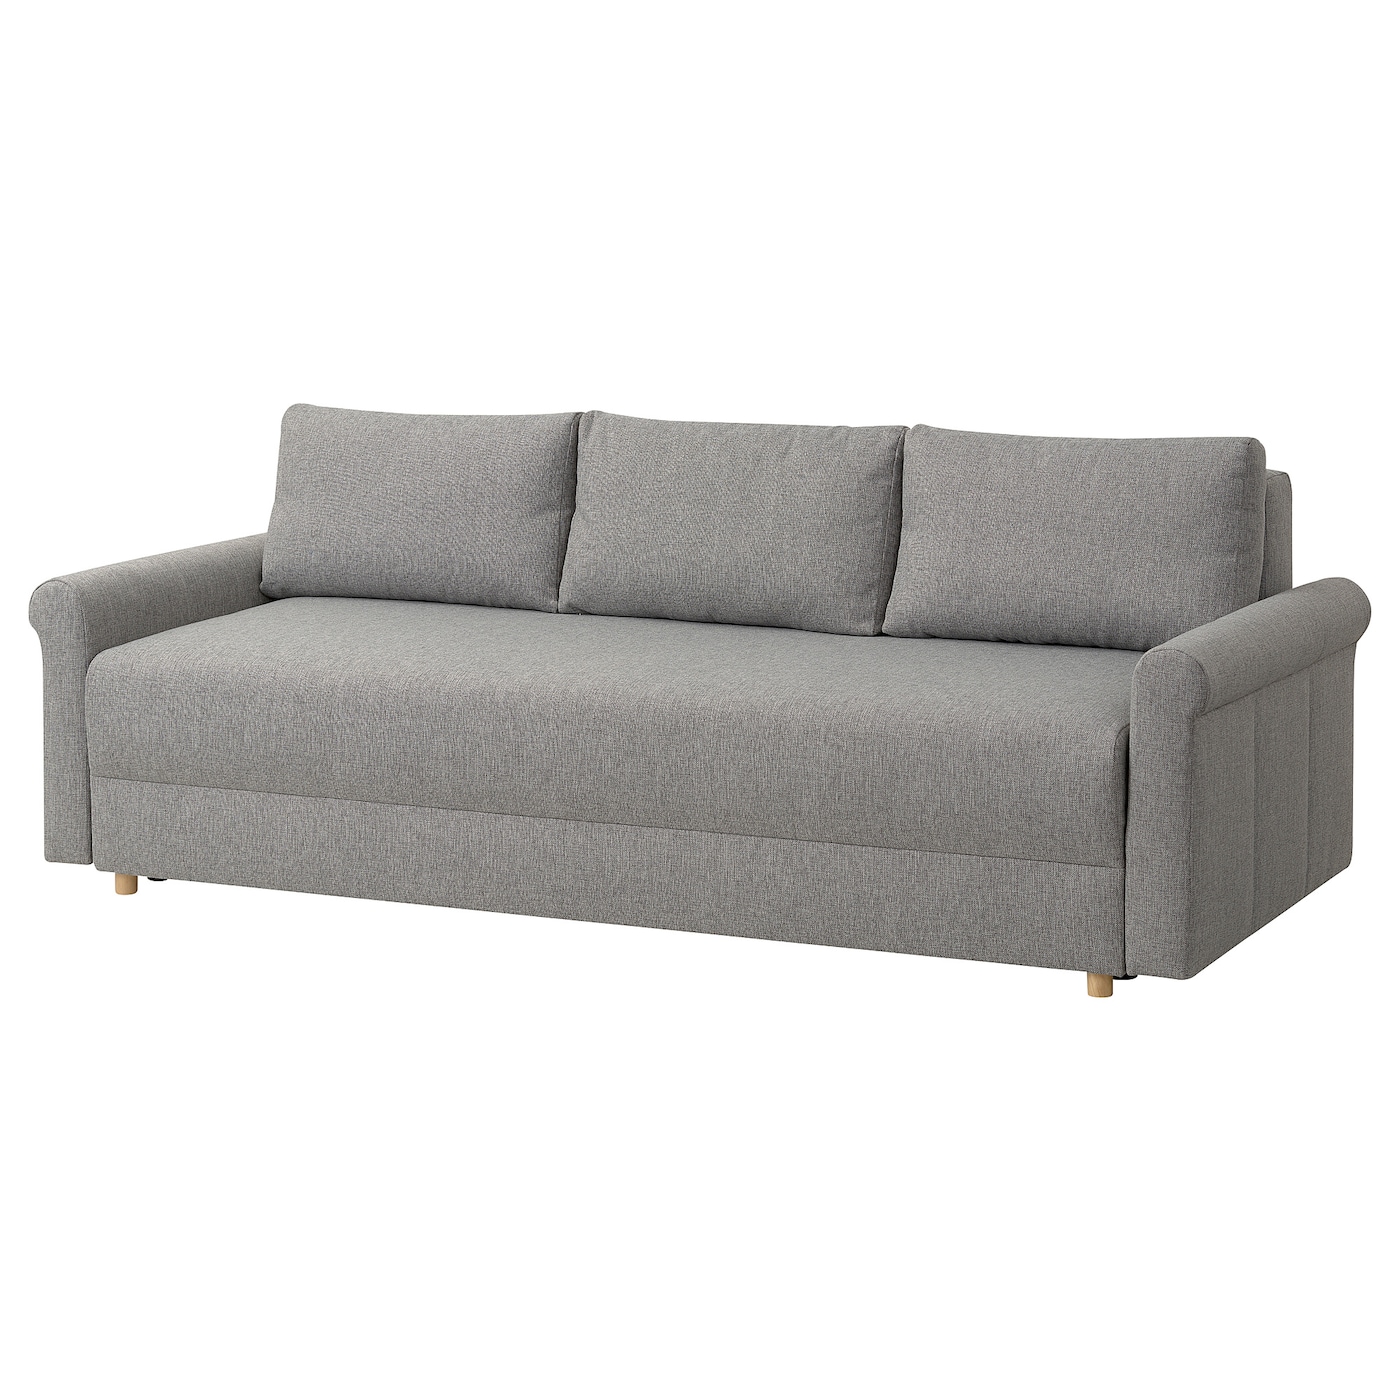 3-местный диван-кровать - IKEA DÅNHULT/DANHULT,  78x96x220см, серый, ДАНХУЛЬТ ИКЕА